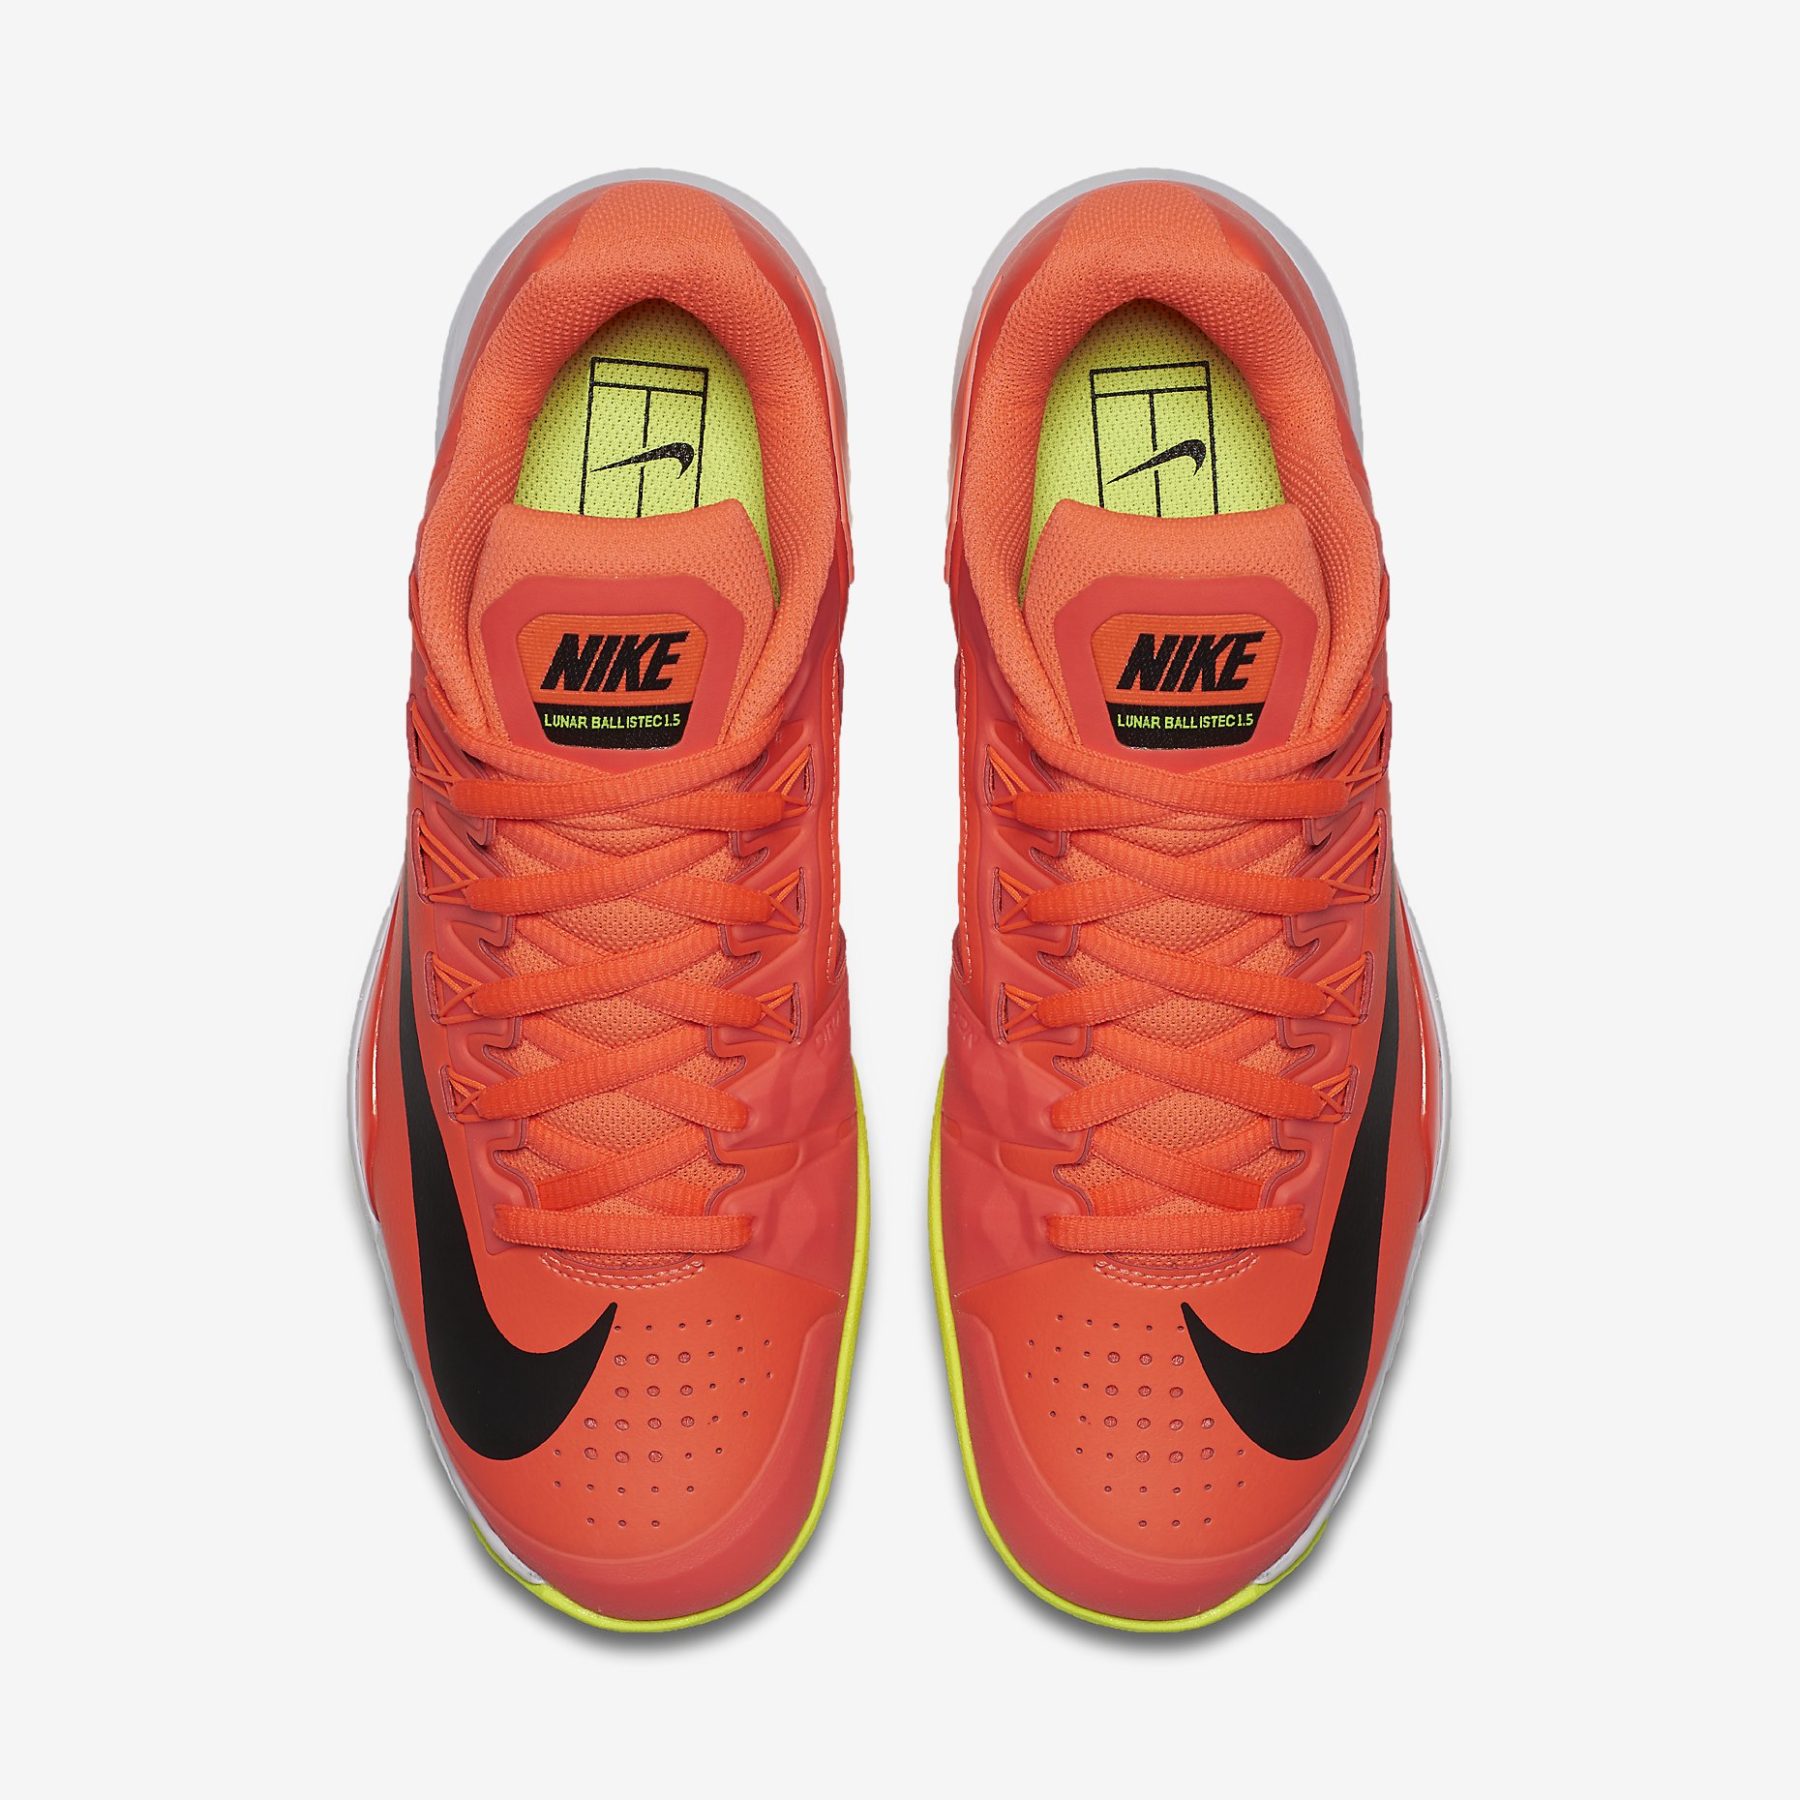 Nike, las zapatillas más deseadas gracias a Federer y Nadal